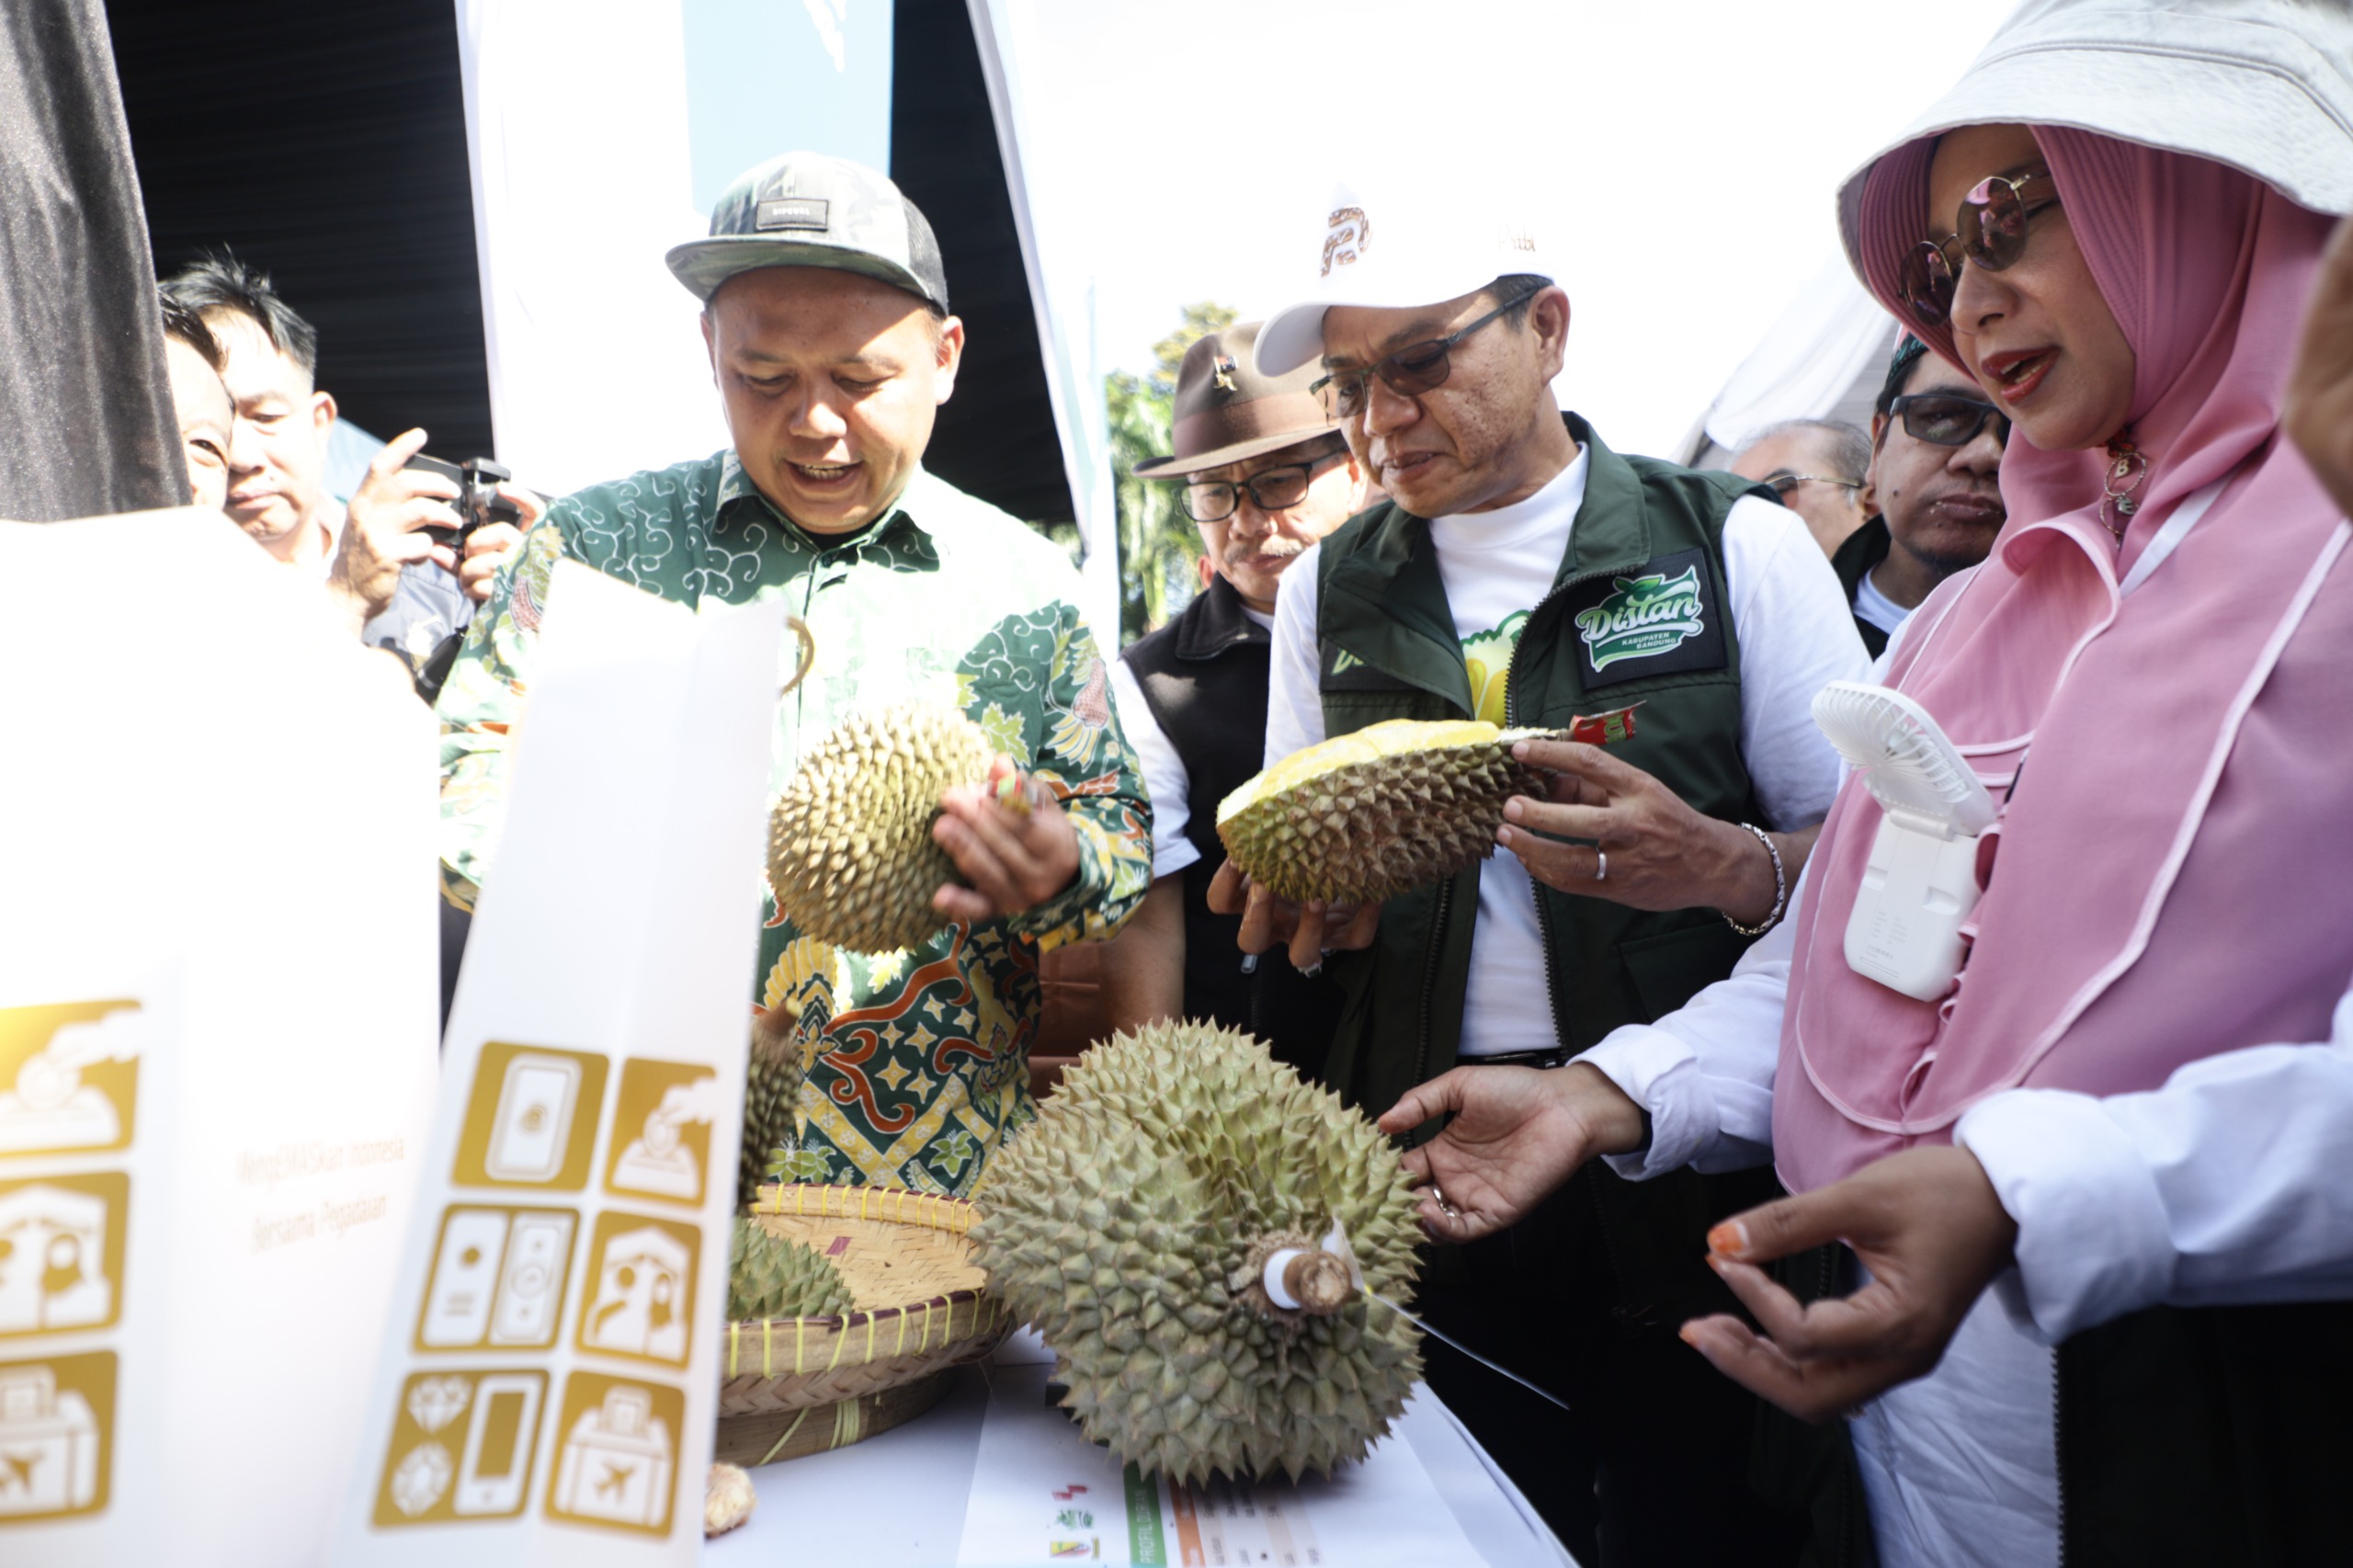 Bedas Festival Durian, Bupati Dadang Supriatna: Membuka Cakrawala Bisnis Durian Mancanegara